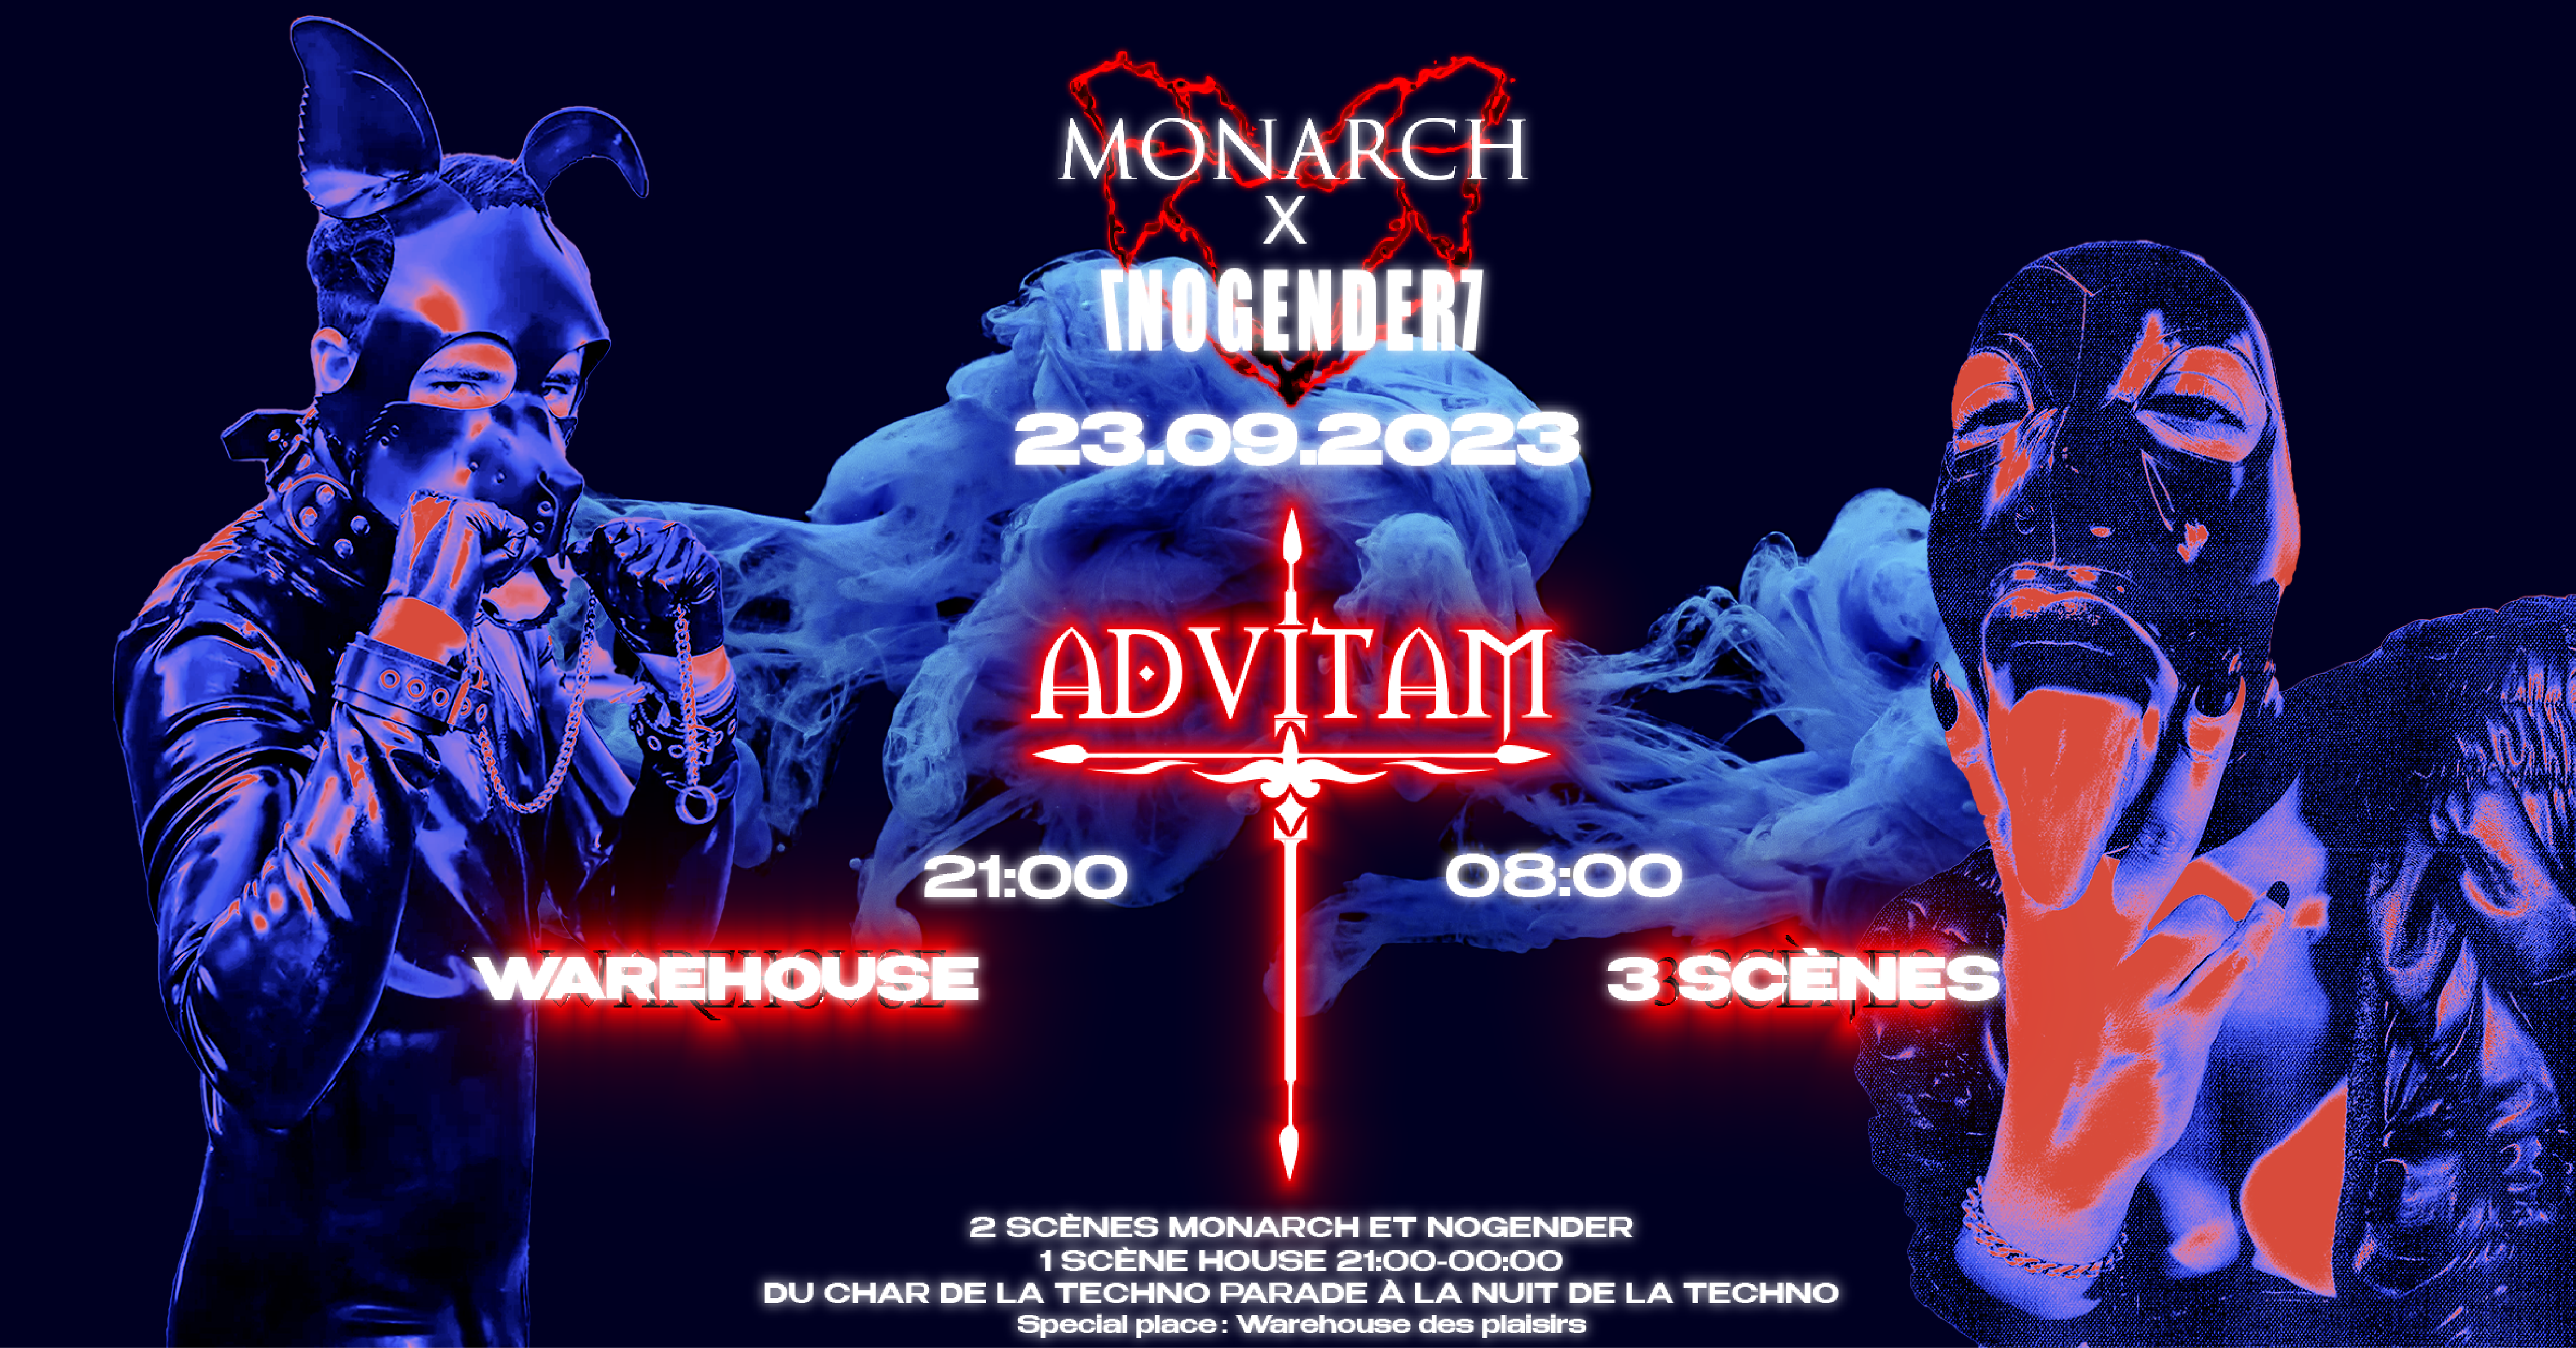 MONARCH X NOGENDER: ADVITAM - フライヤー表